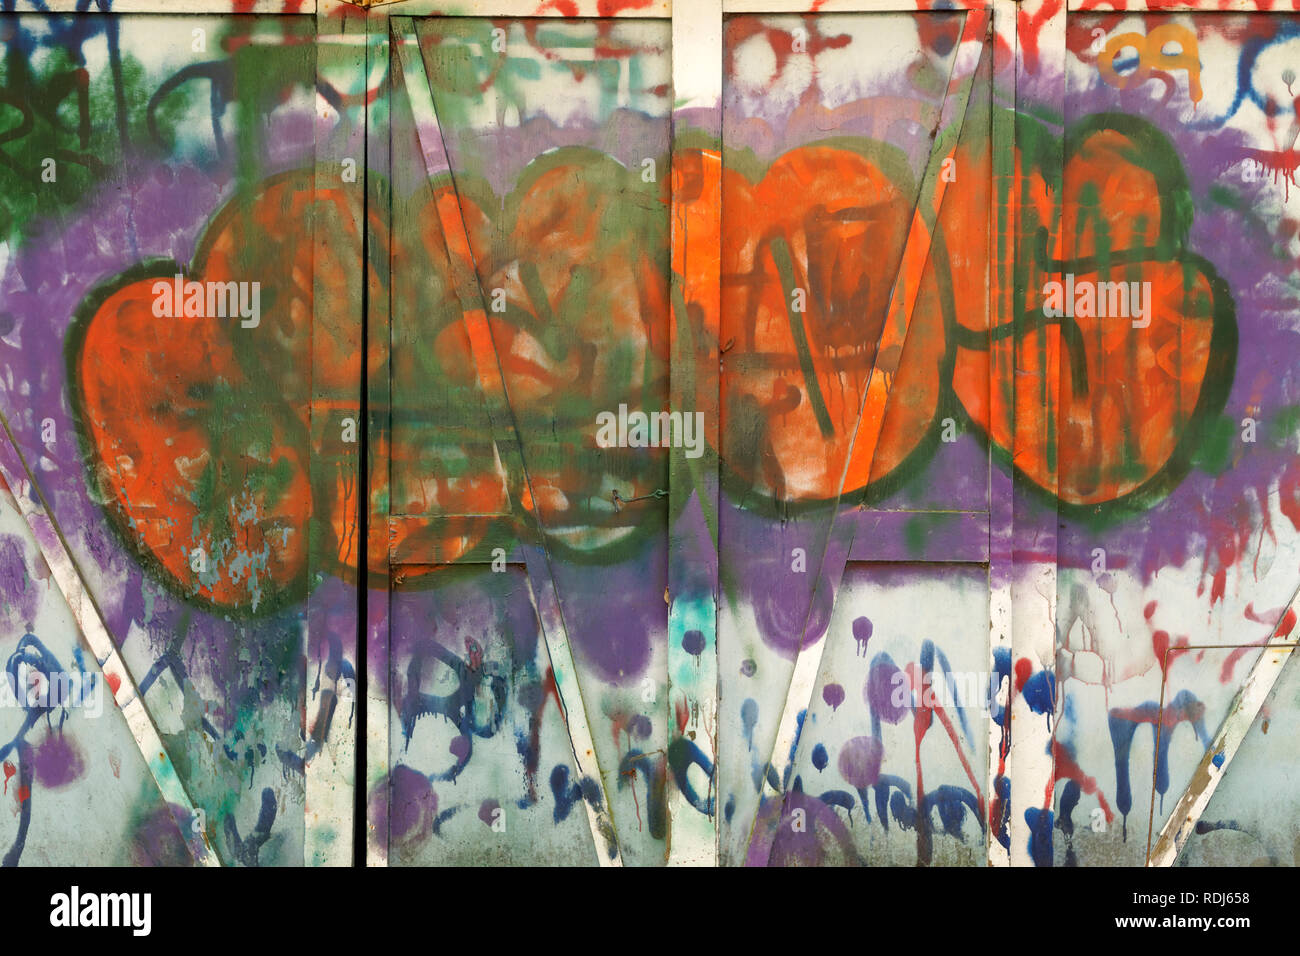 Holz- wand mit lebhaft bunten Tags und anderen städtischen Graffiti, abstrakte Design lackiert Stockfoto